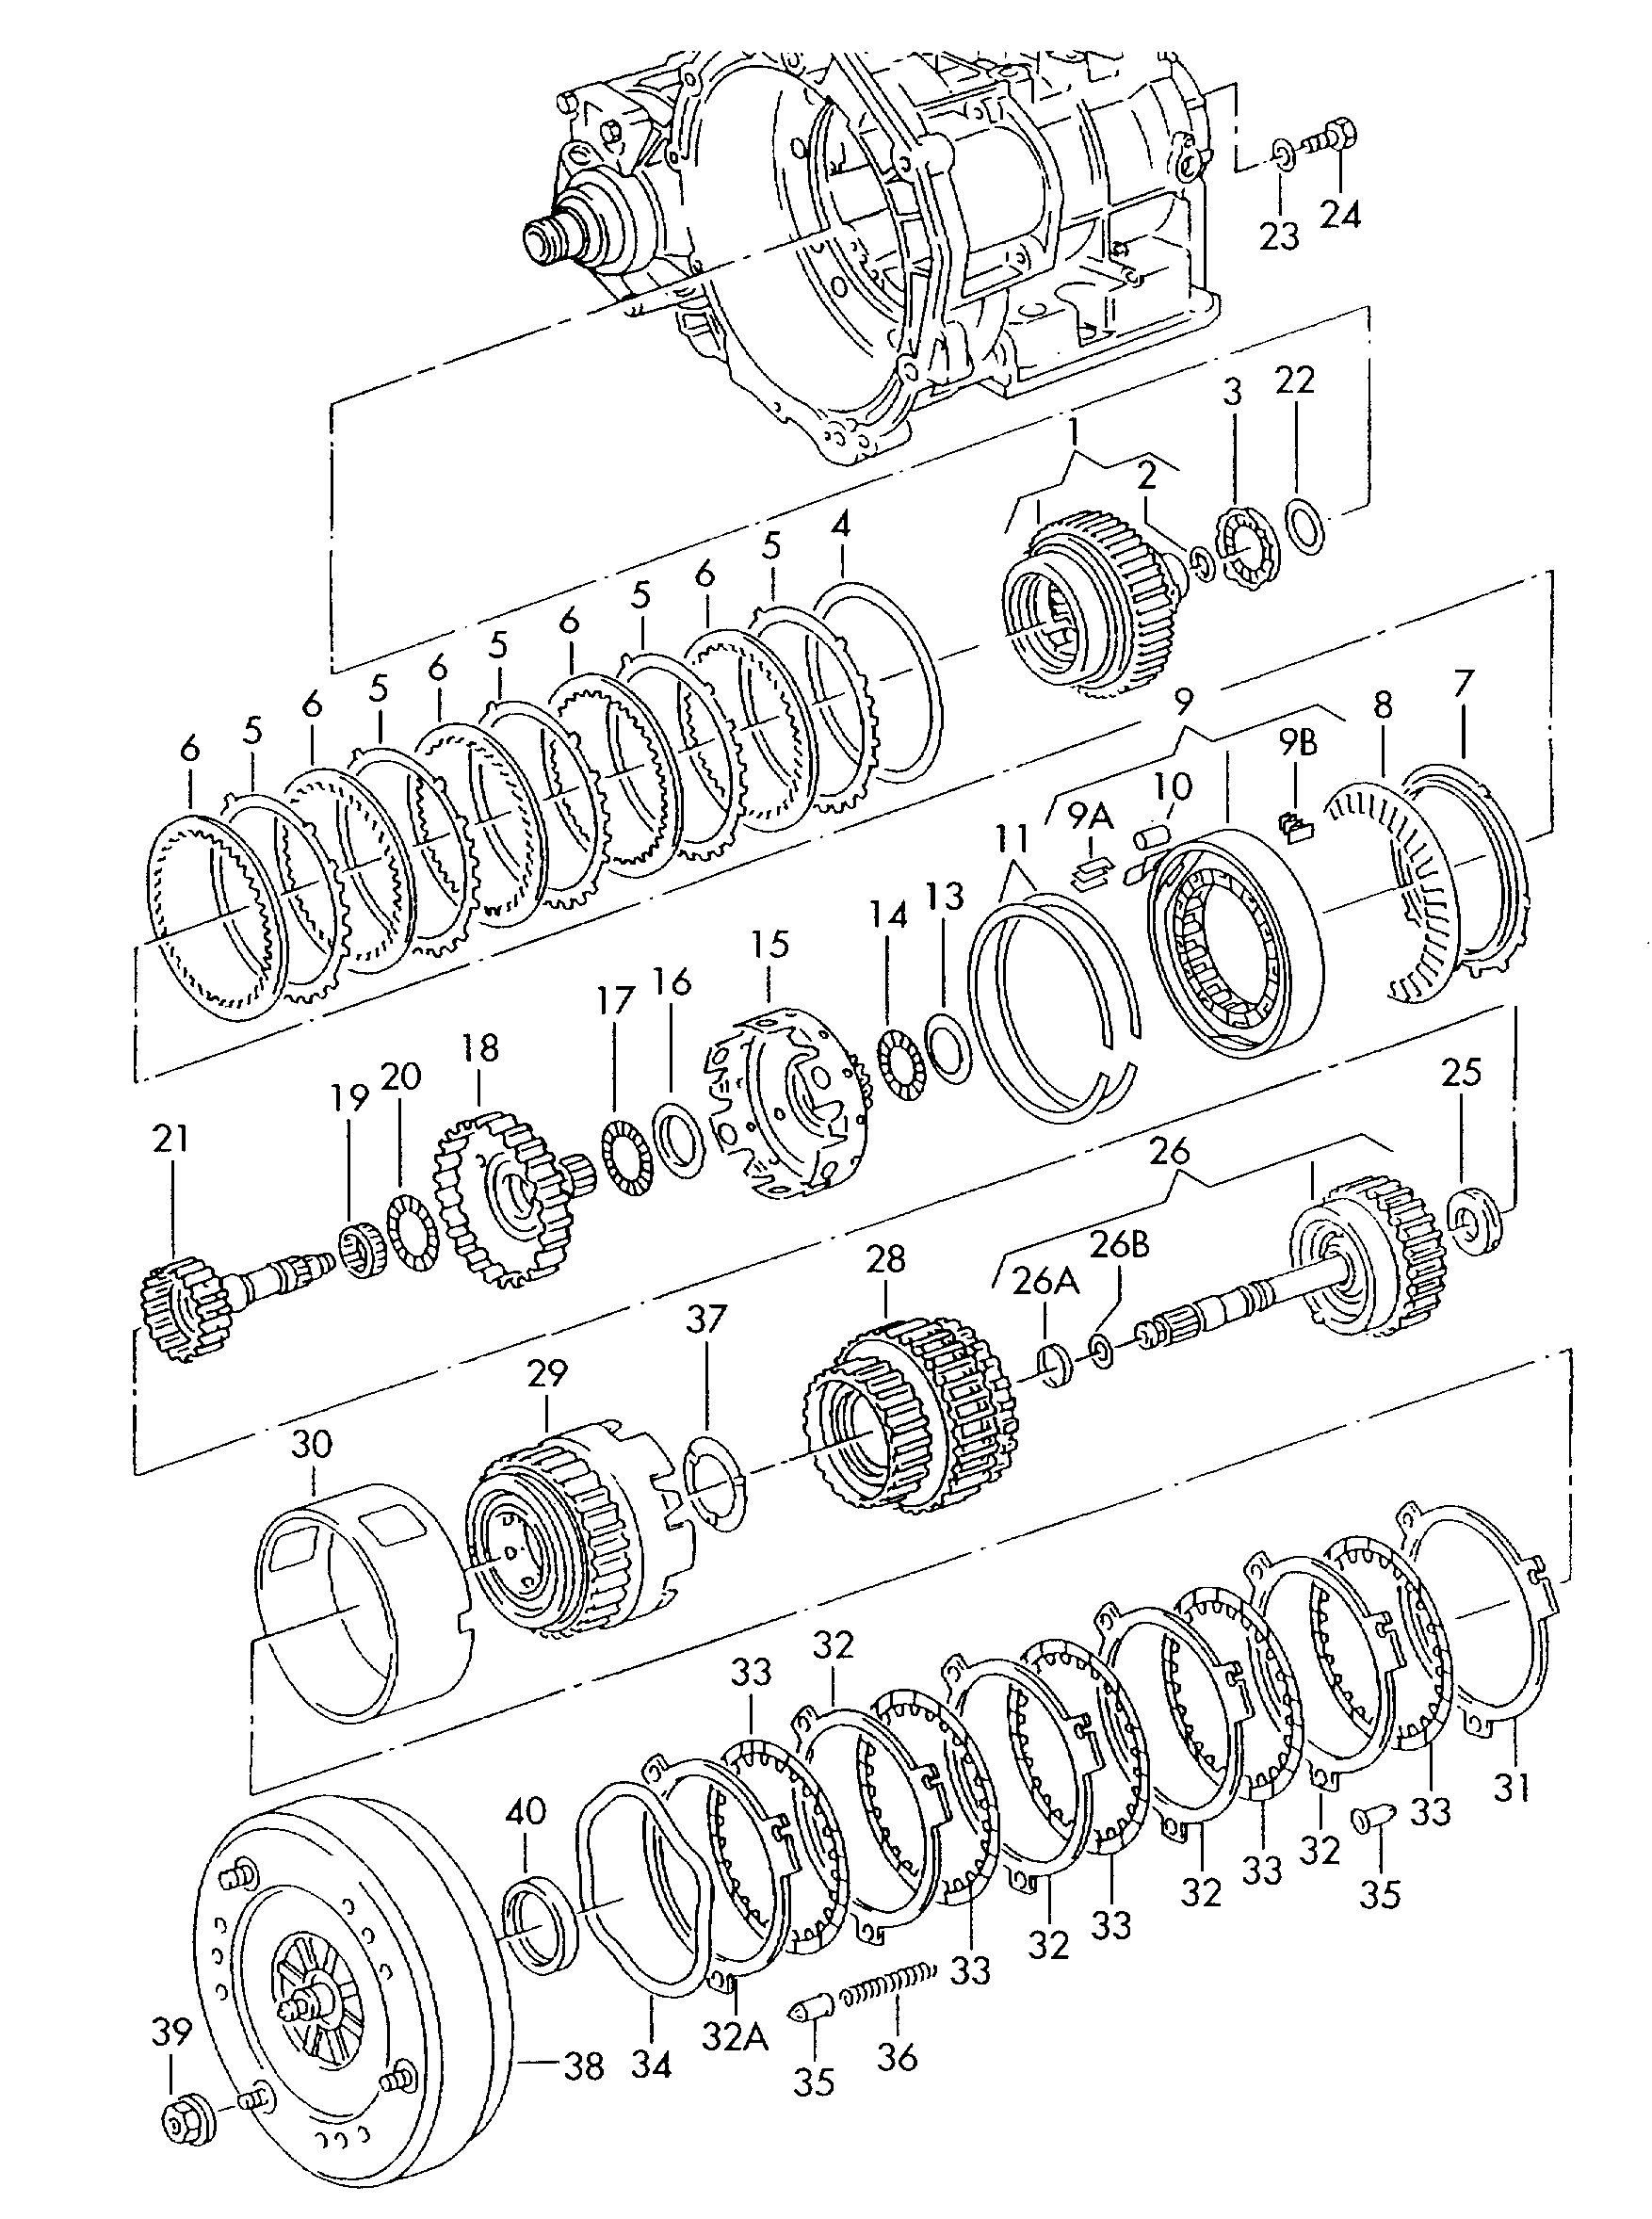 前行-
倒档离合器; 行星齿轮架; 变矩器; 用于四档自动变速器 - Alhambra(AL)  